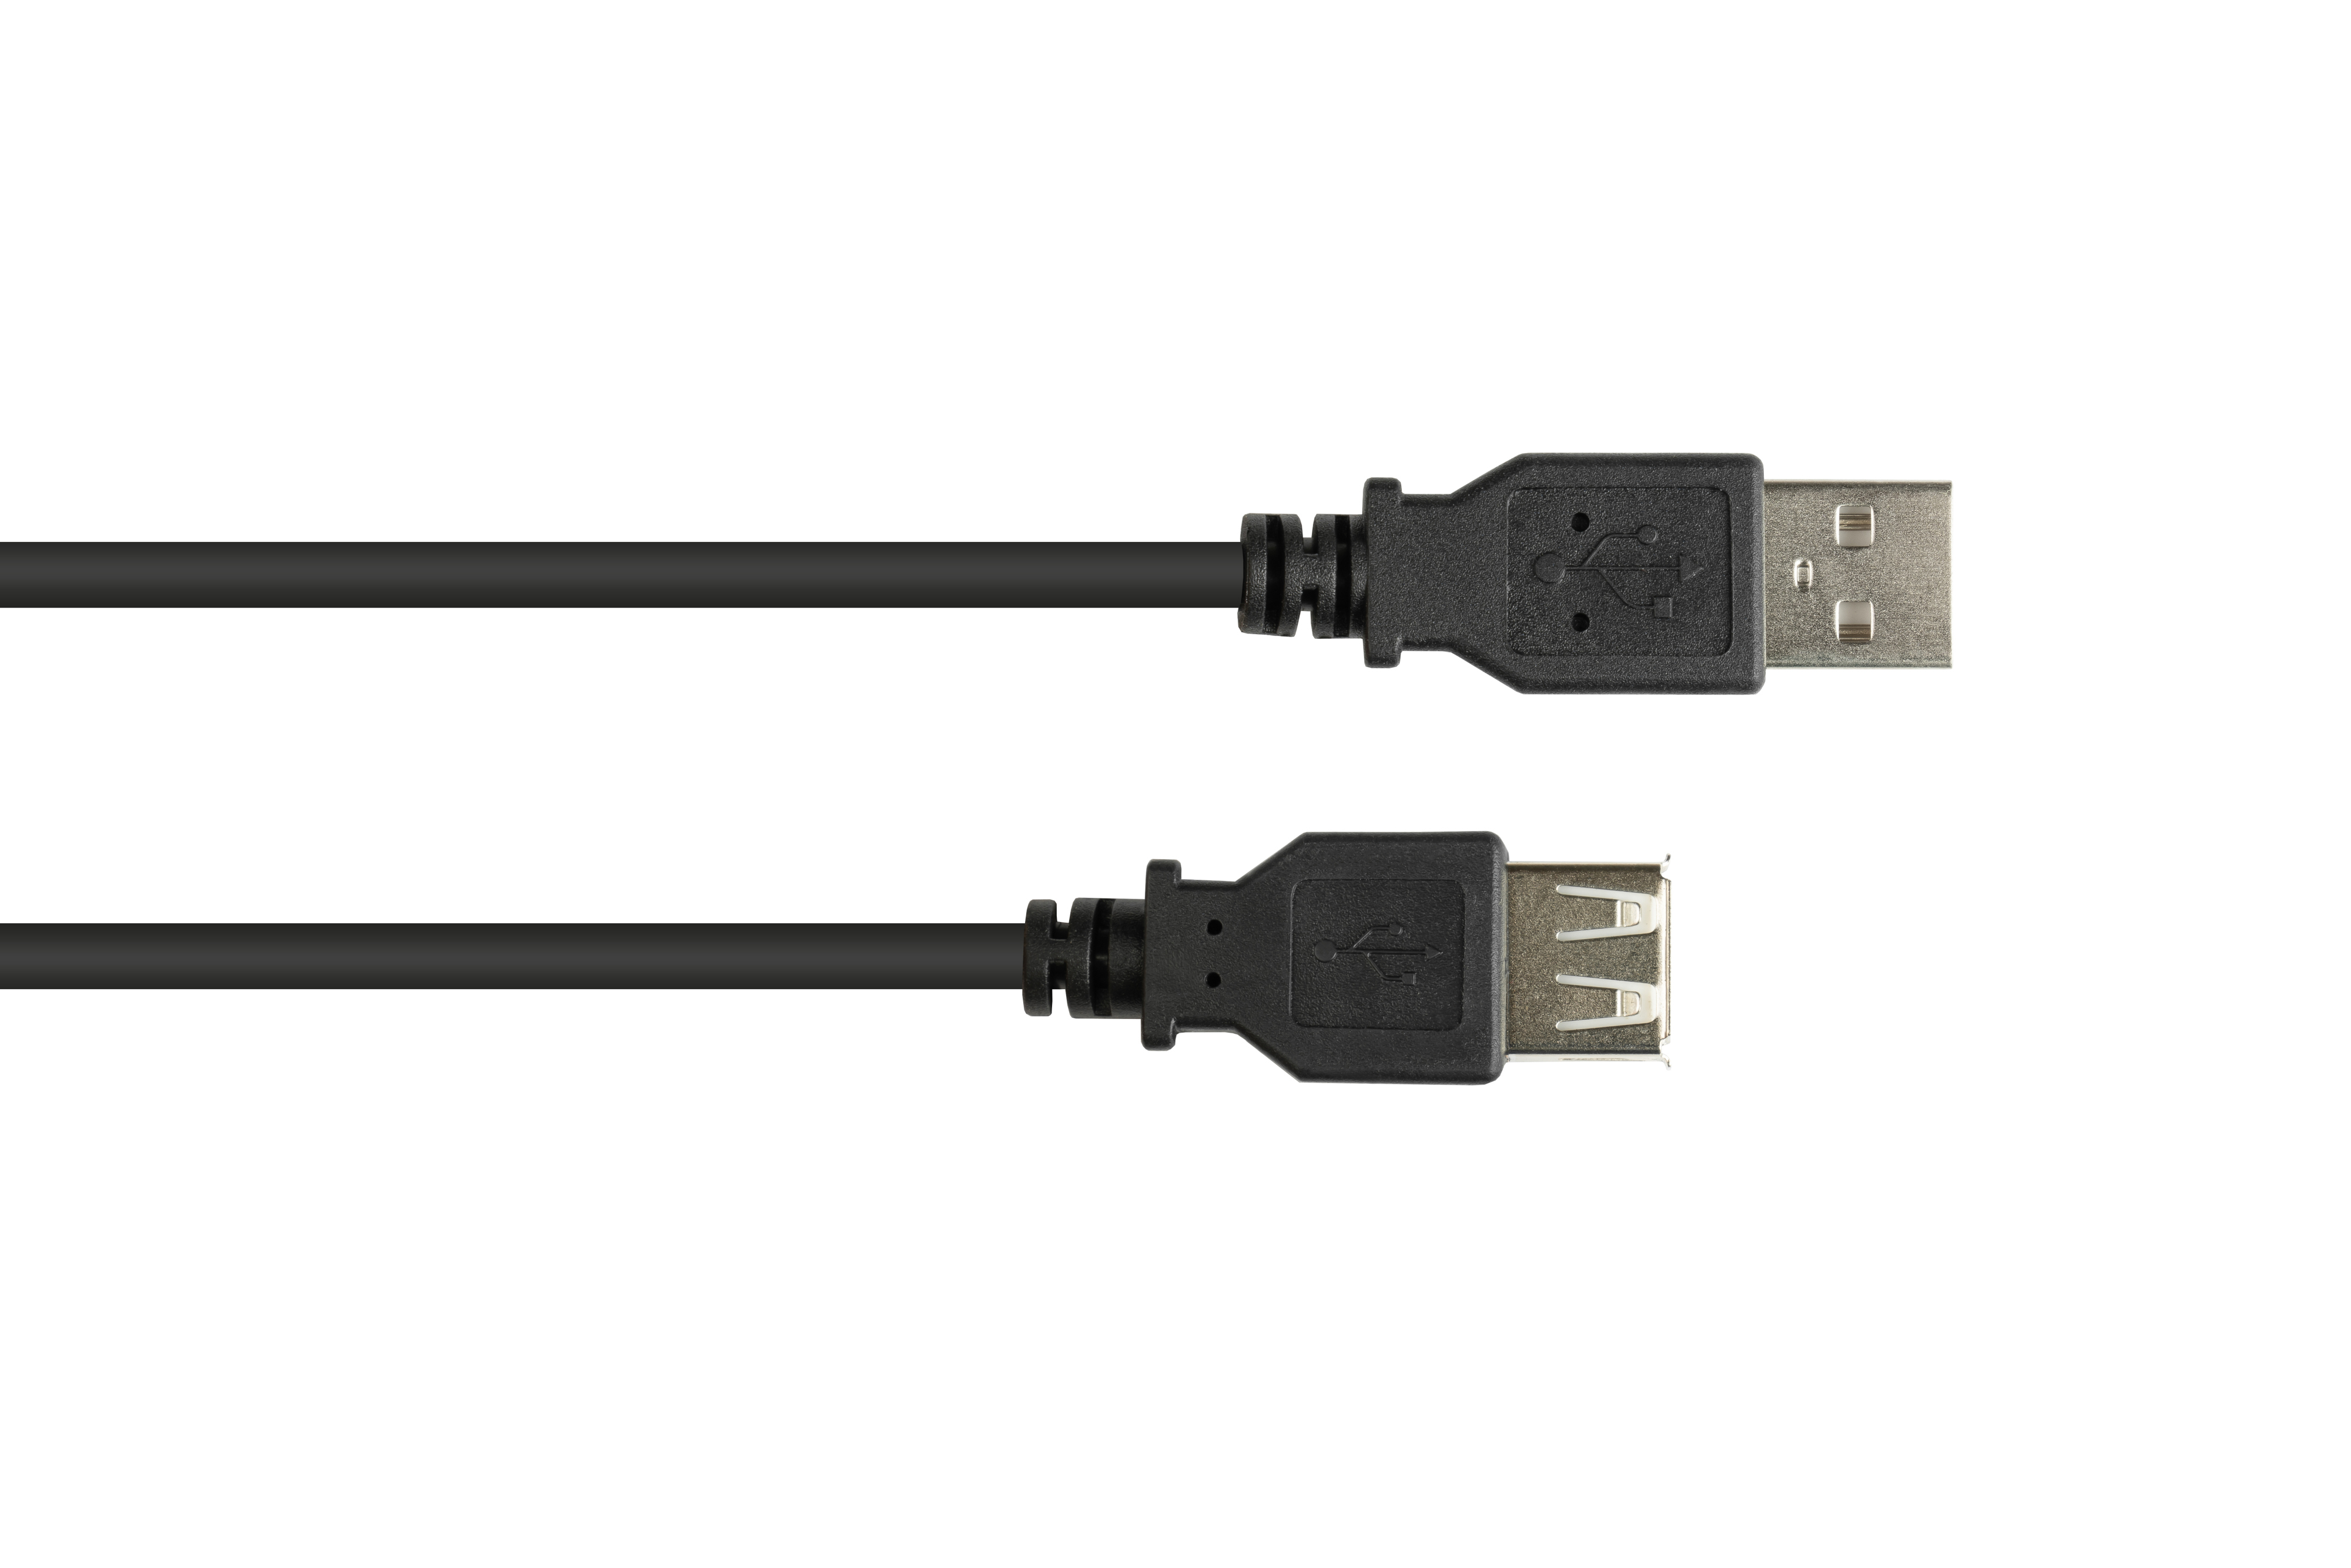 GOOD CONNECTIONS schwarz Stecker Buchse A, A USB Verlängerungskabel 2.0 an